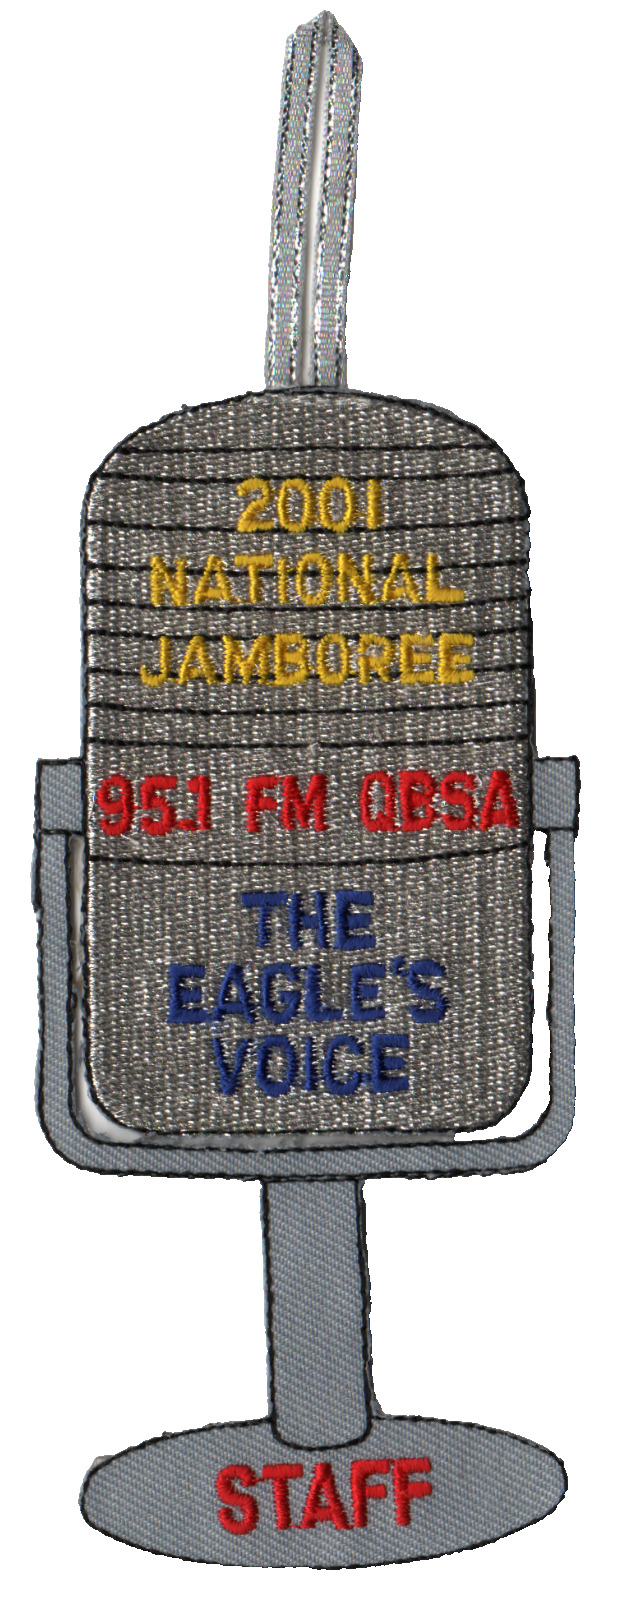 2001 Jamboree The Egale's Voice 95.1 FM QBSA Staff JSP Bdr (AR927)